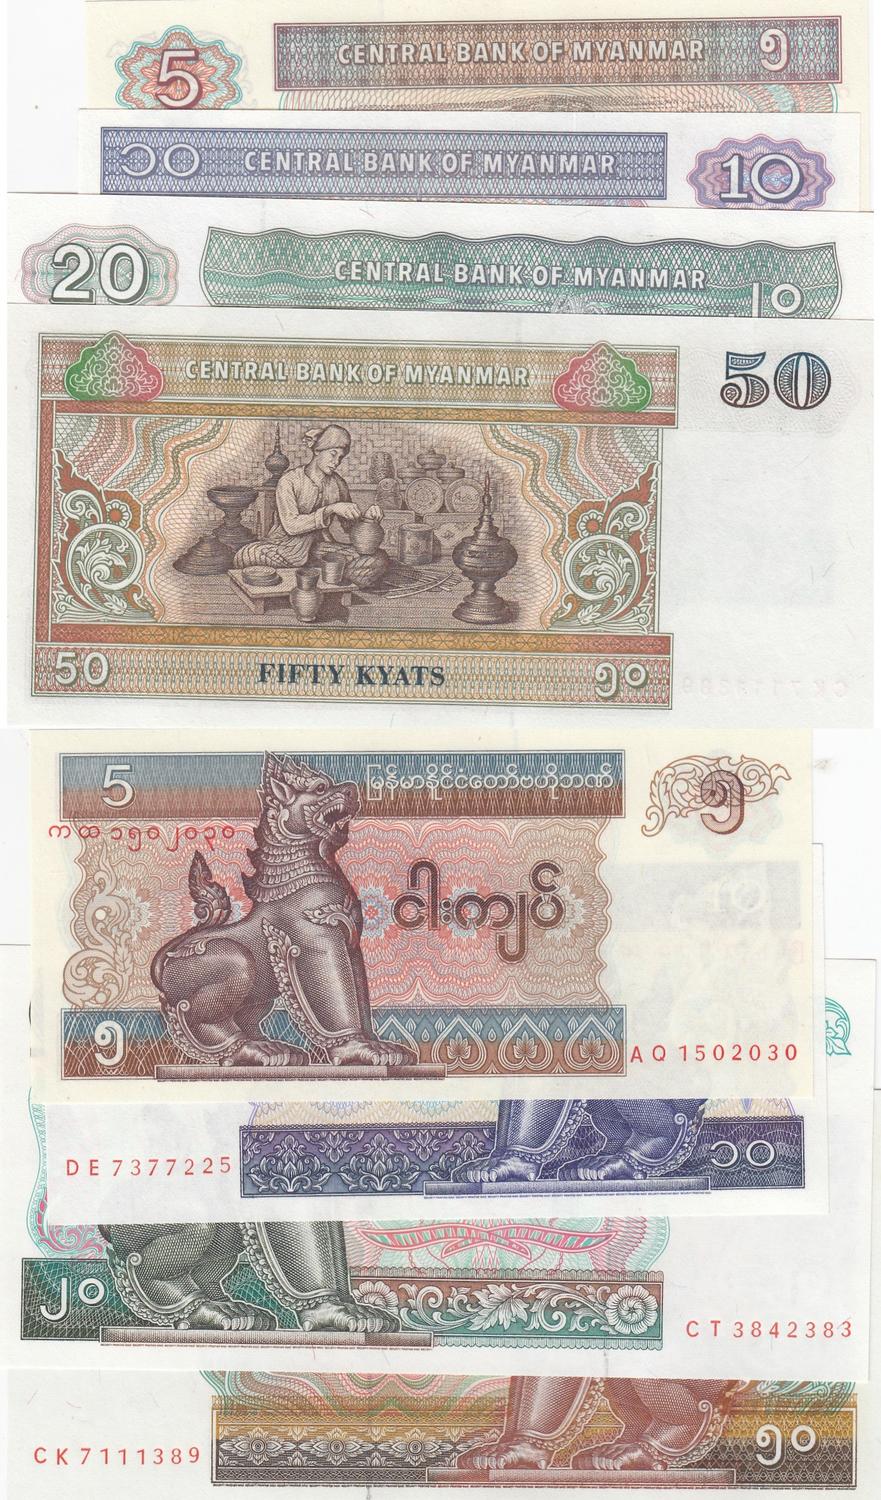 MYANMAR 5 KYATS 1996 P70 BANKNOTE UNC 